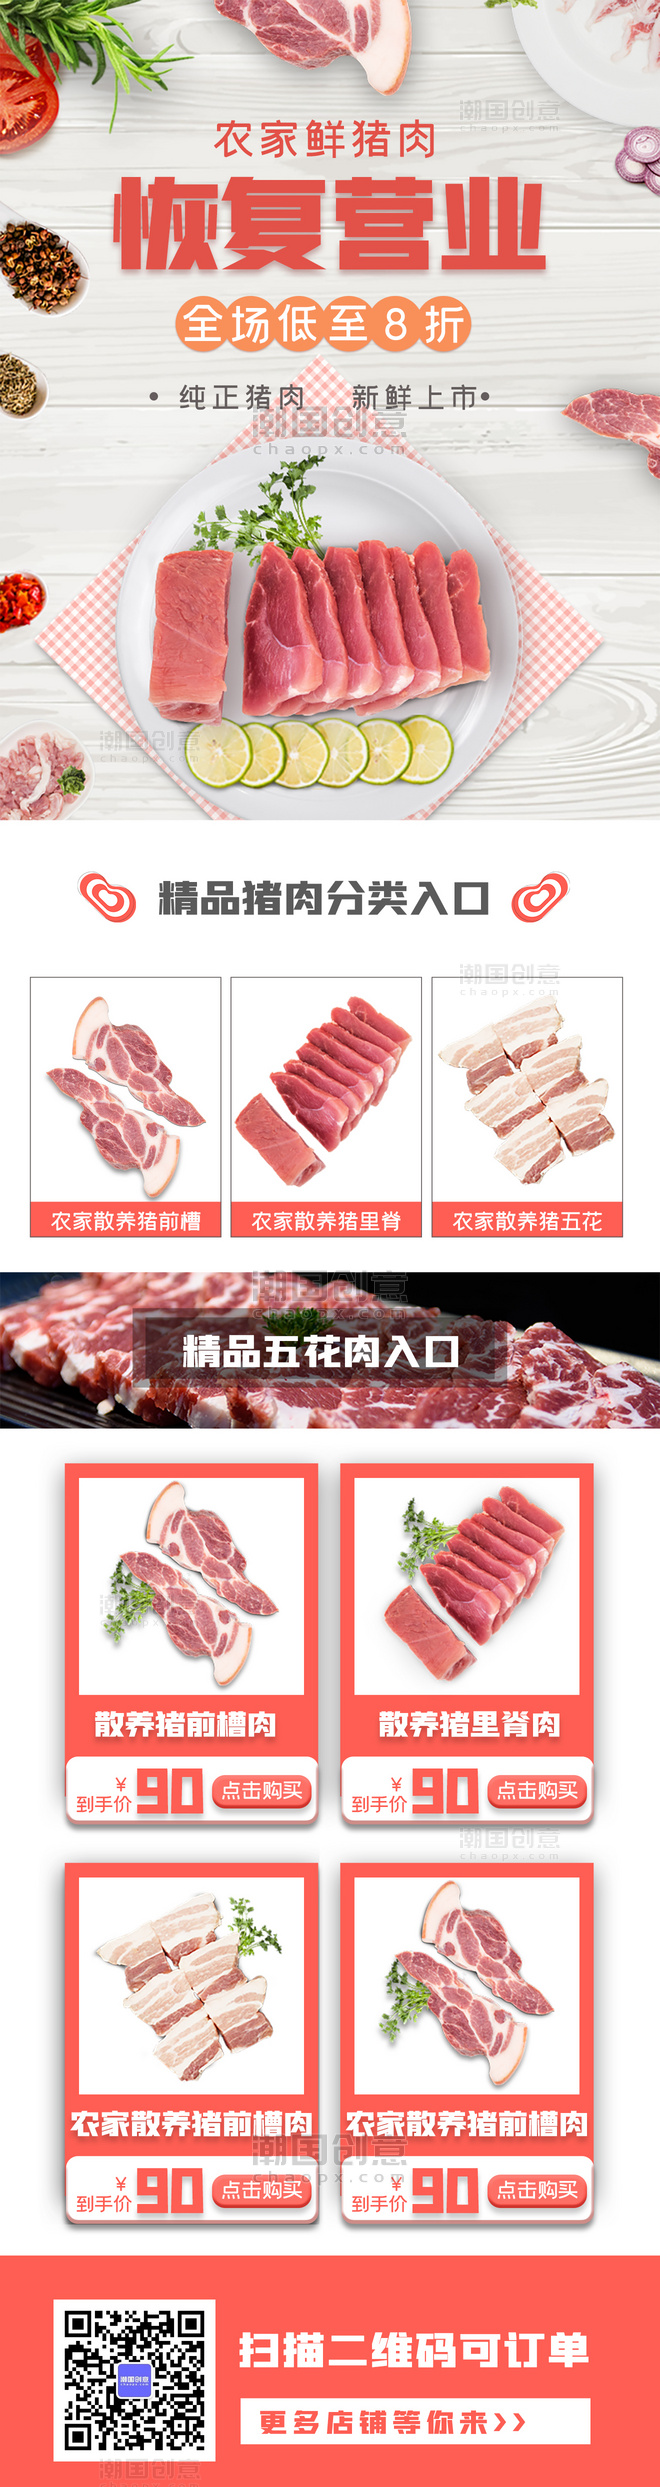 冷鲜肉超市恢复营业促销活动复工通知H5长图海报